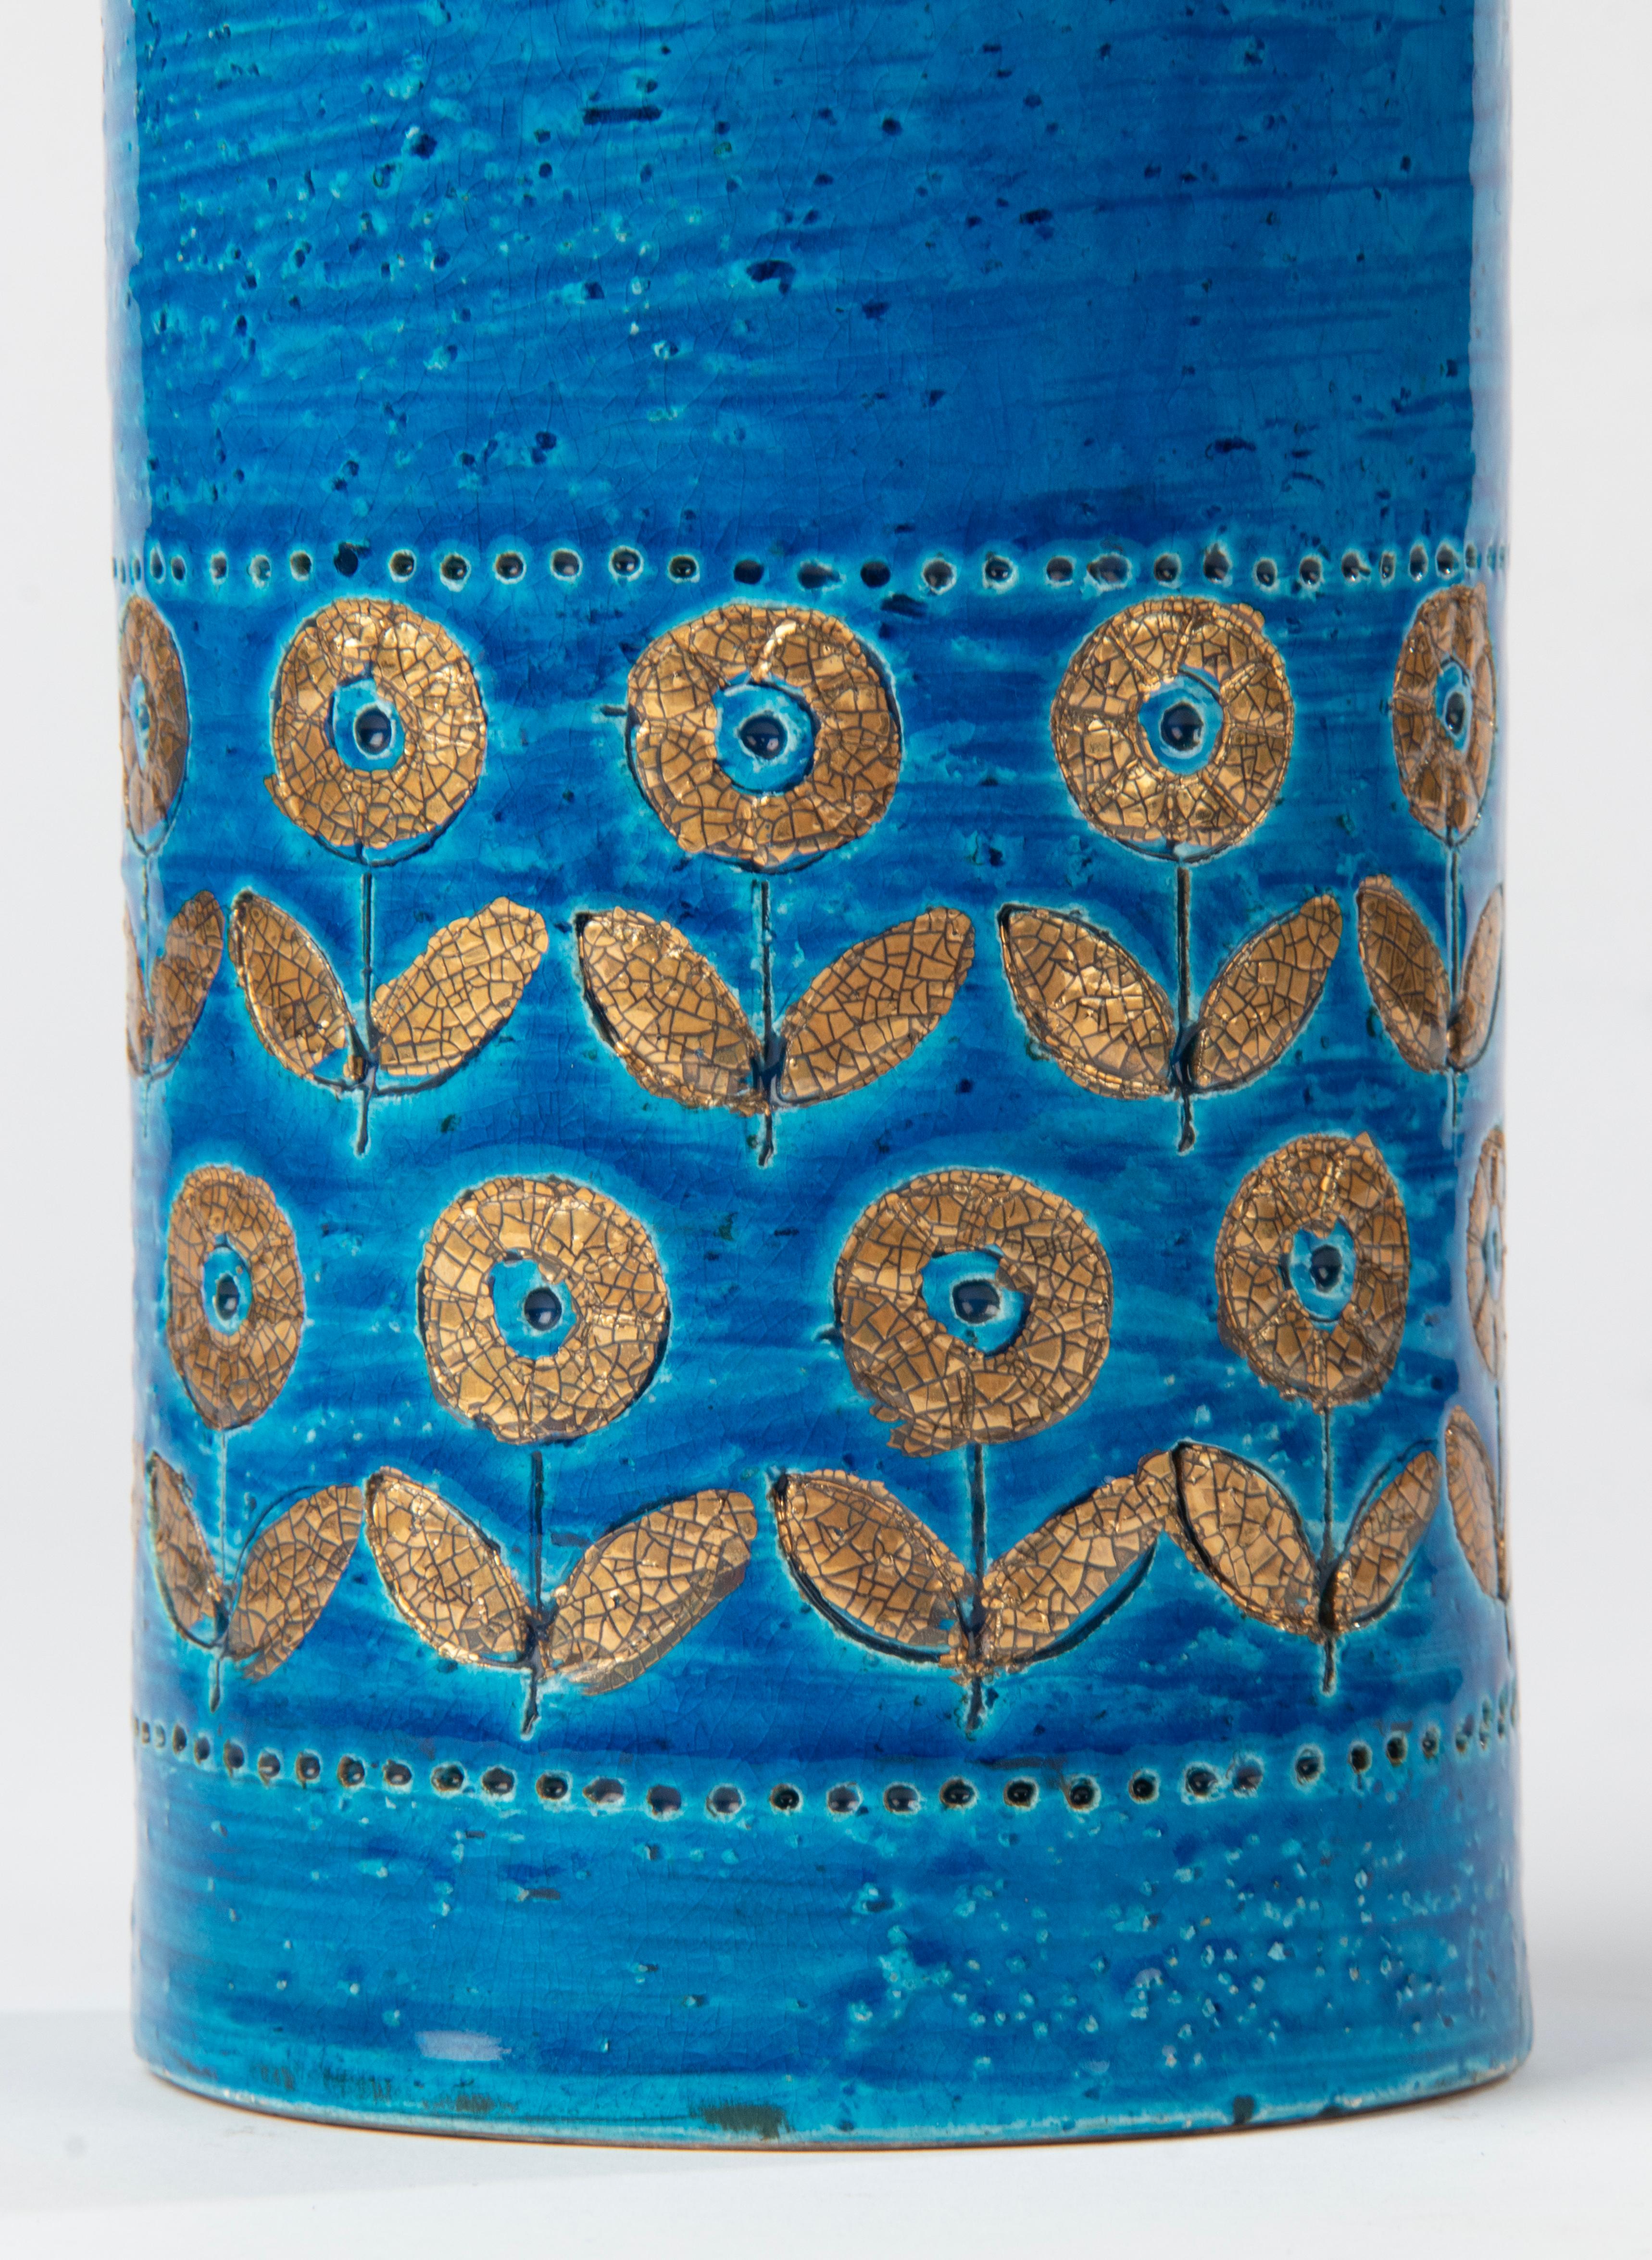 Eine schöne Keramikvase, die dem italienischen Hersteller Bitossi zugeschrieben wird. Die Vase ist nicht gekennzeichnet. Die blaue Farbe, Form und Struktur sind charakteristisch für Bistossi.
Die Vase ist in gutem Zustand. Keine Chips und keine